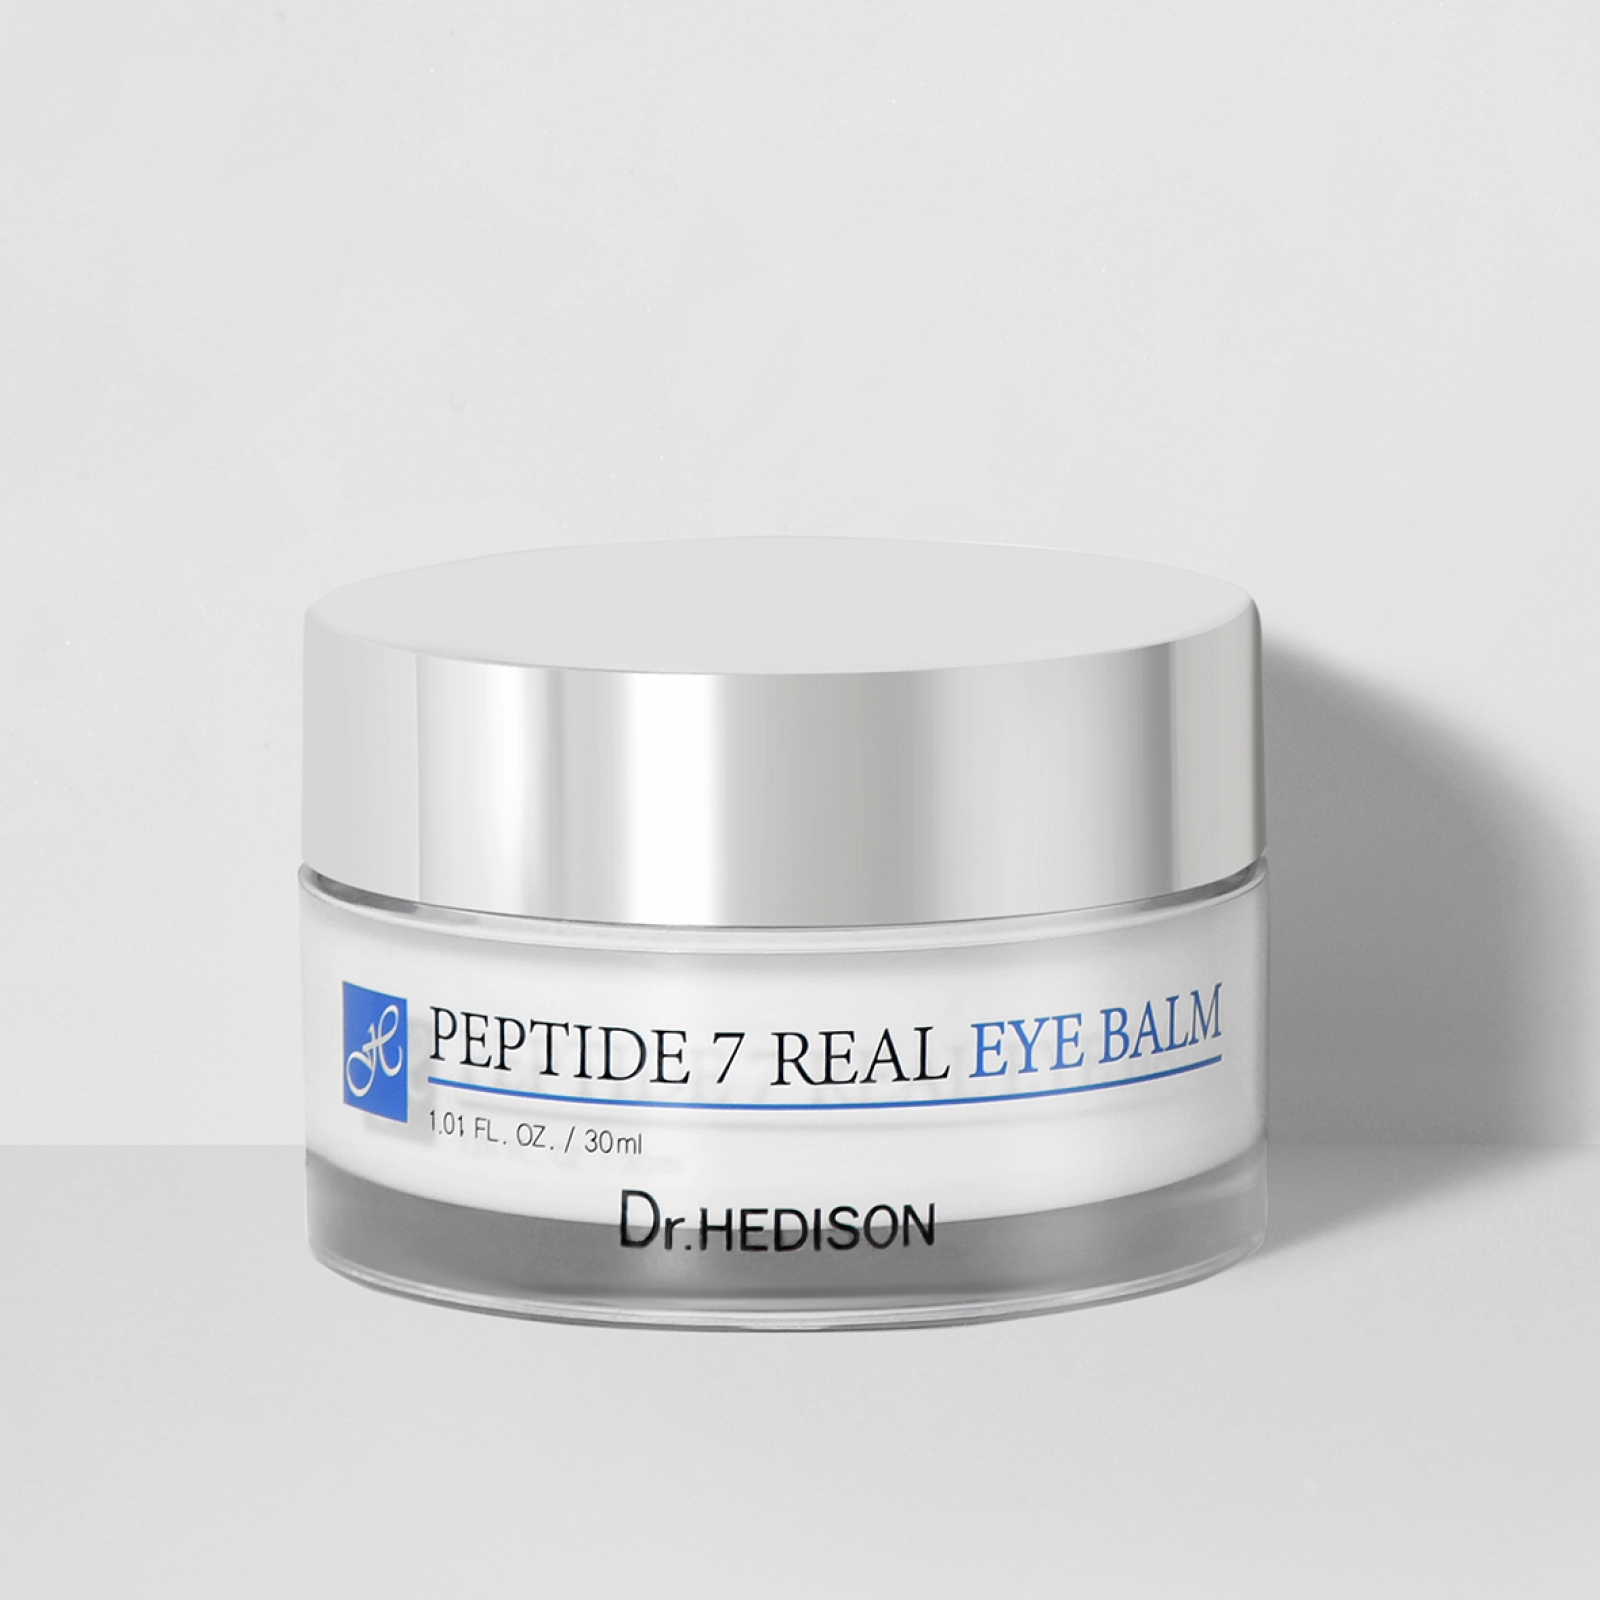 Корректирующий крем-бальзам от темных кругов и отеков под глазами 7 пептидов Dr.HEDISON Real Eye Balm Peptide 7